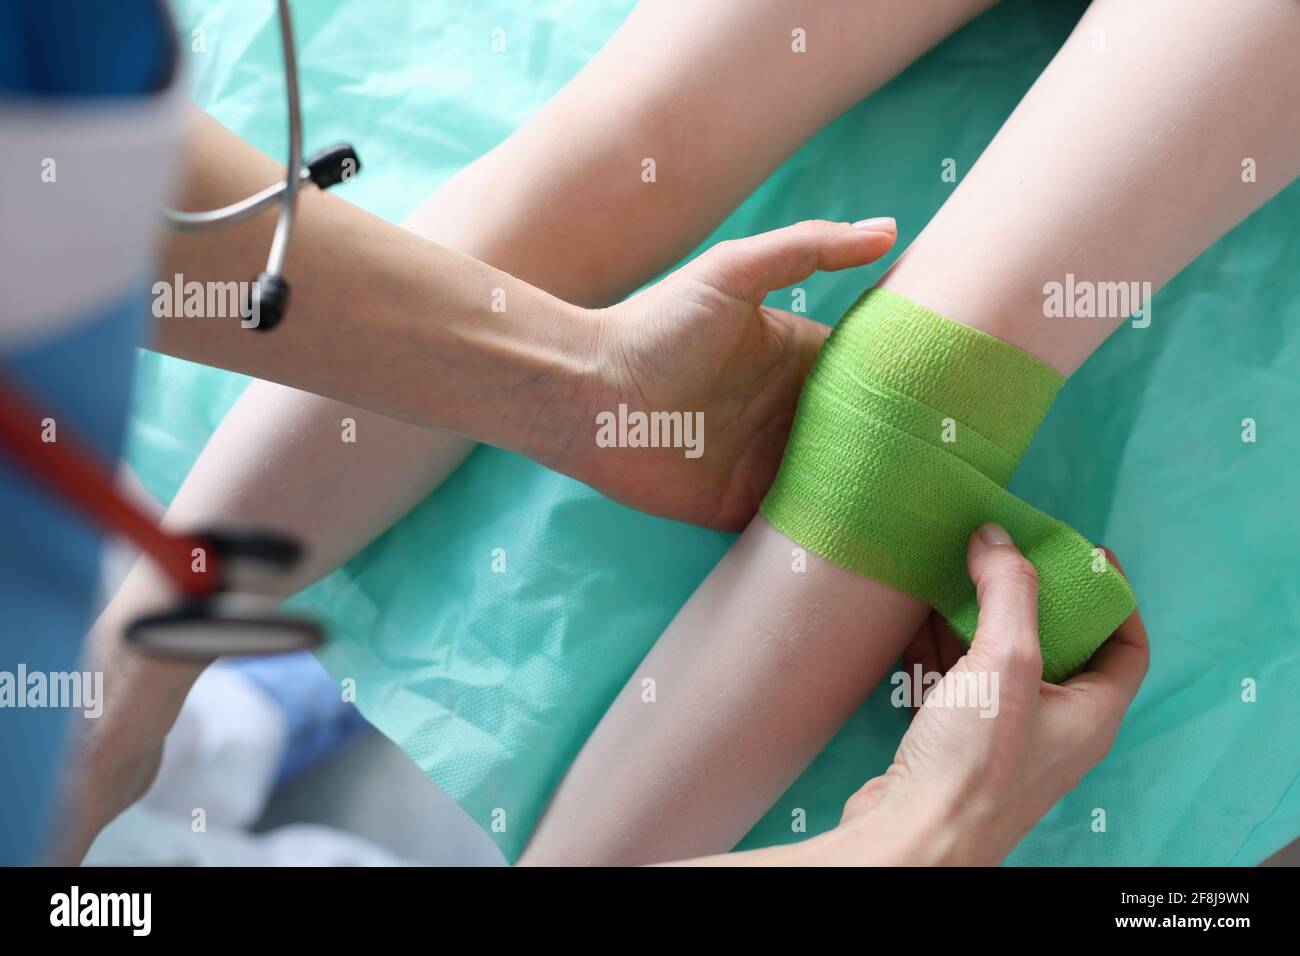 Le médecin met le bandage sur la jambe blessée de l'enfant Banque D'Images